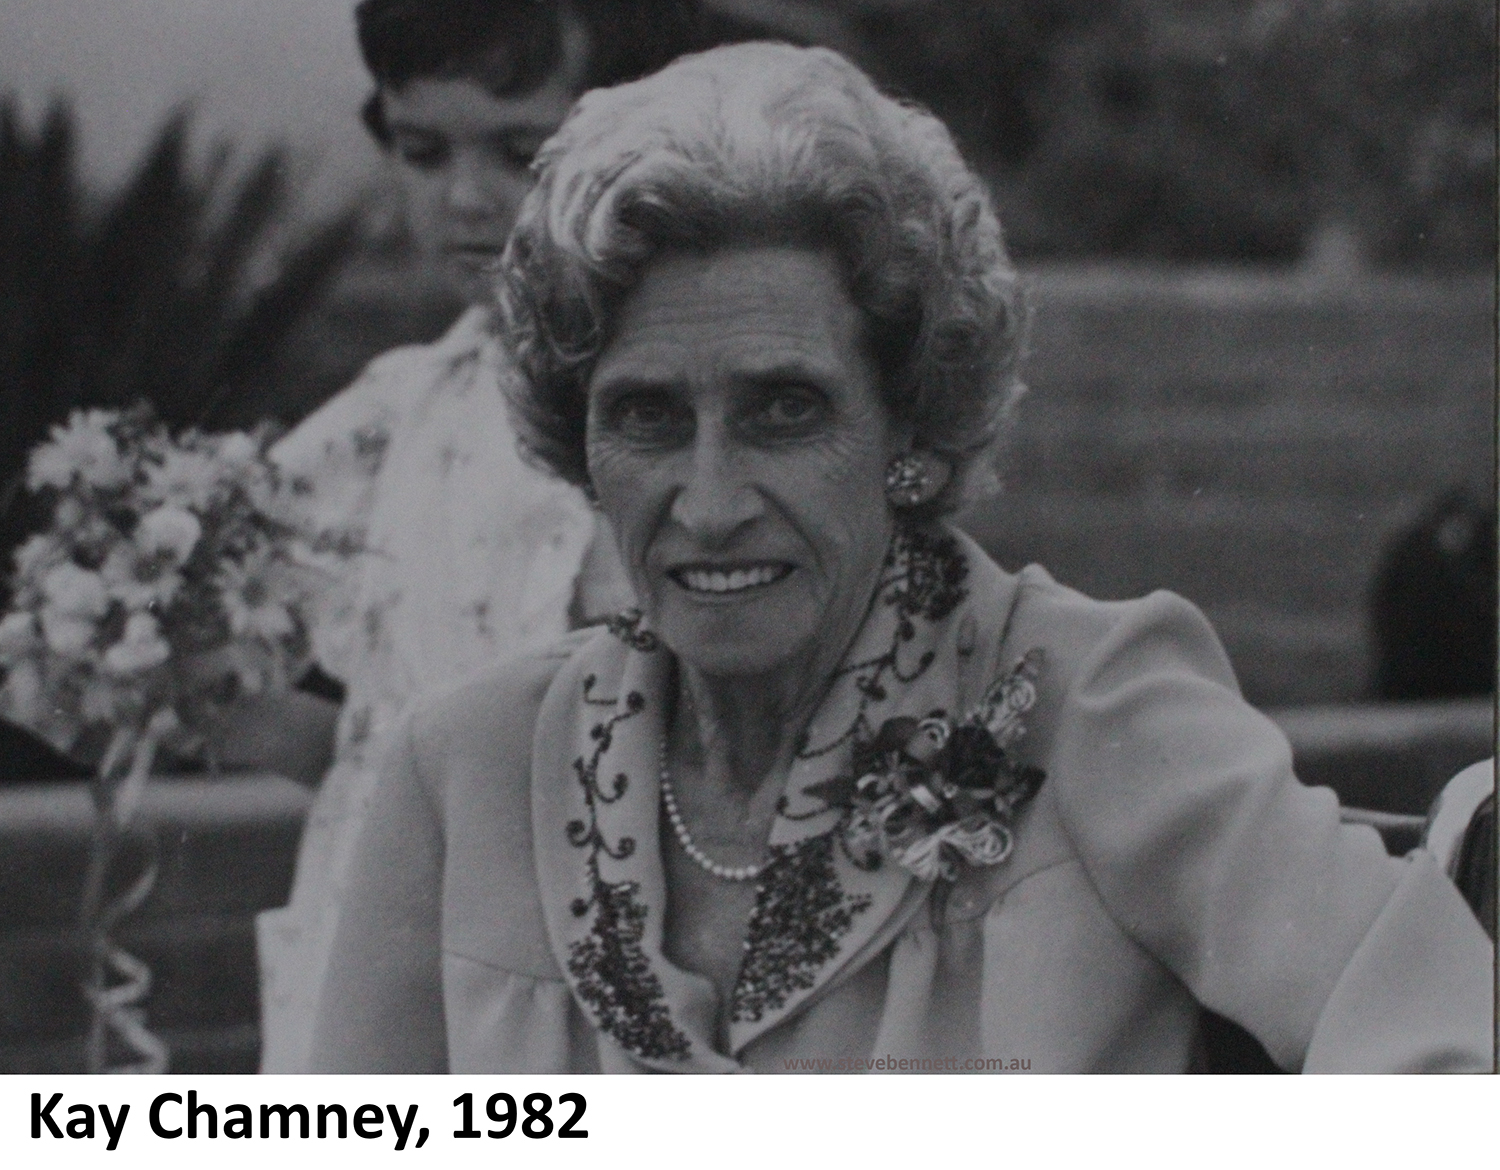 Kay Chamney at Lynn's wedding to Steve Bennett in 1982